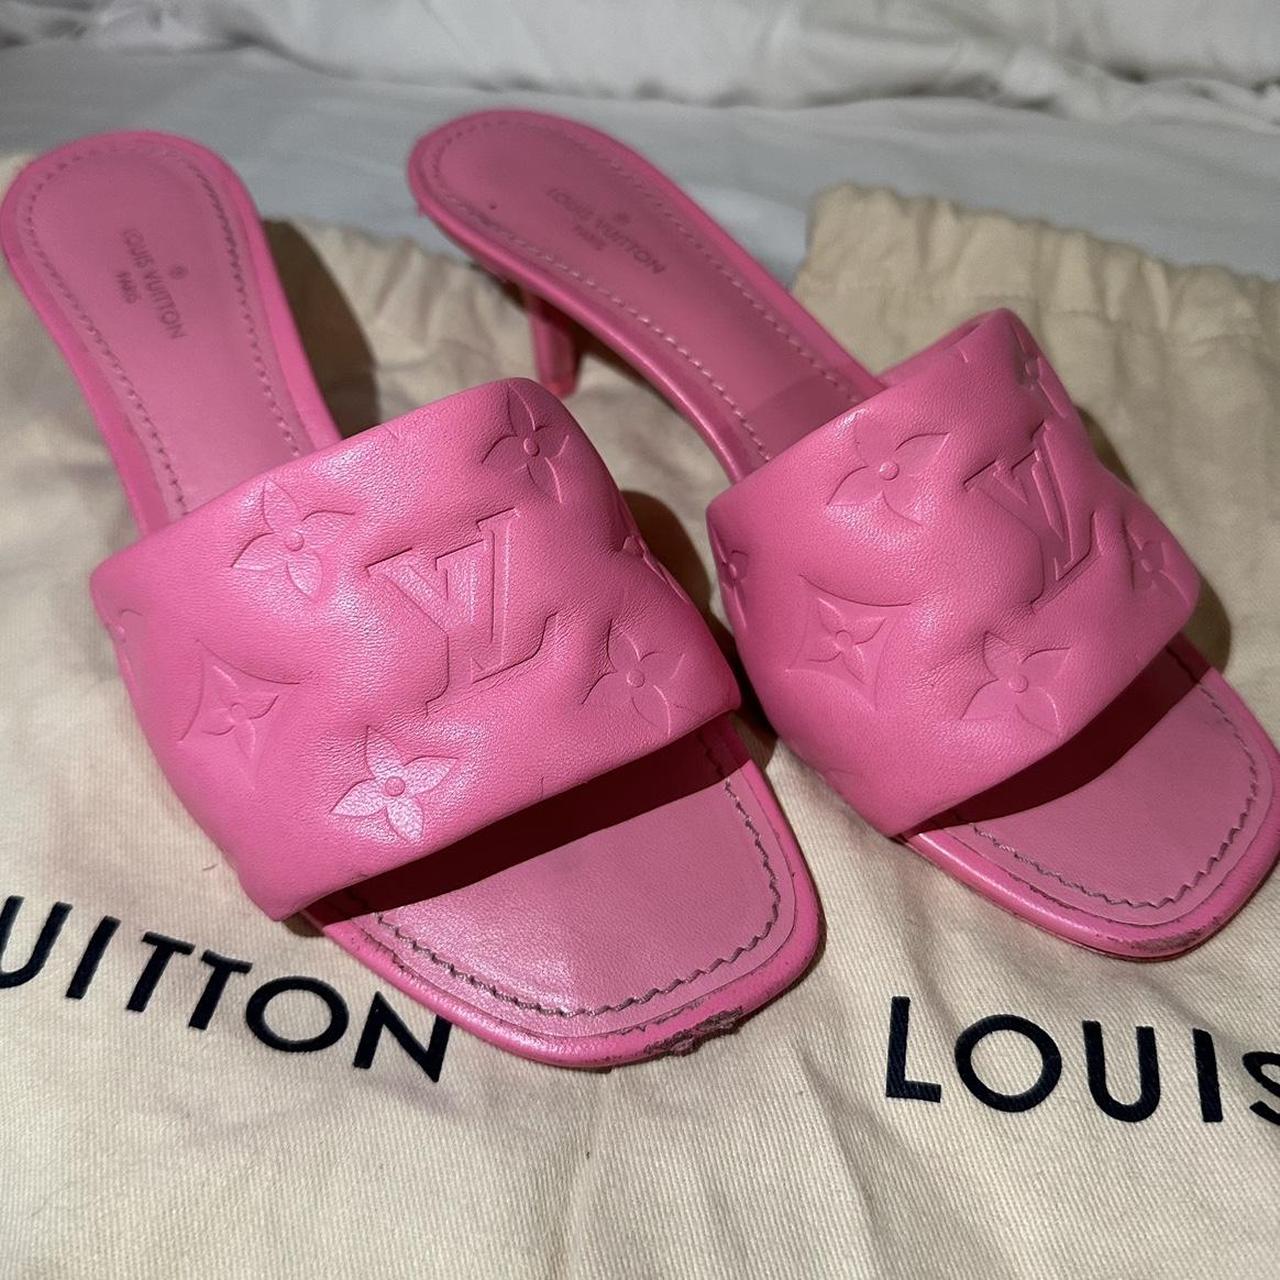 Louis Vuitton Revival Mule Pink. Size 38.0